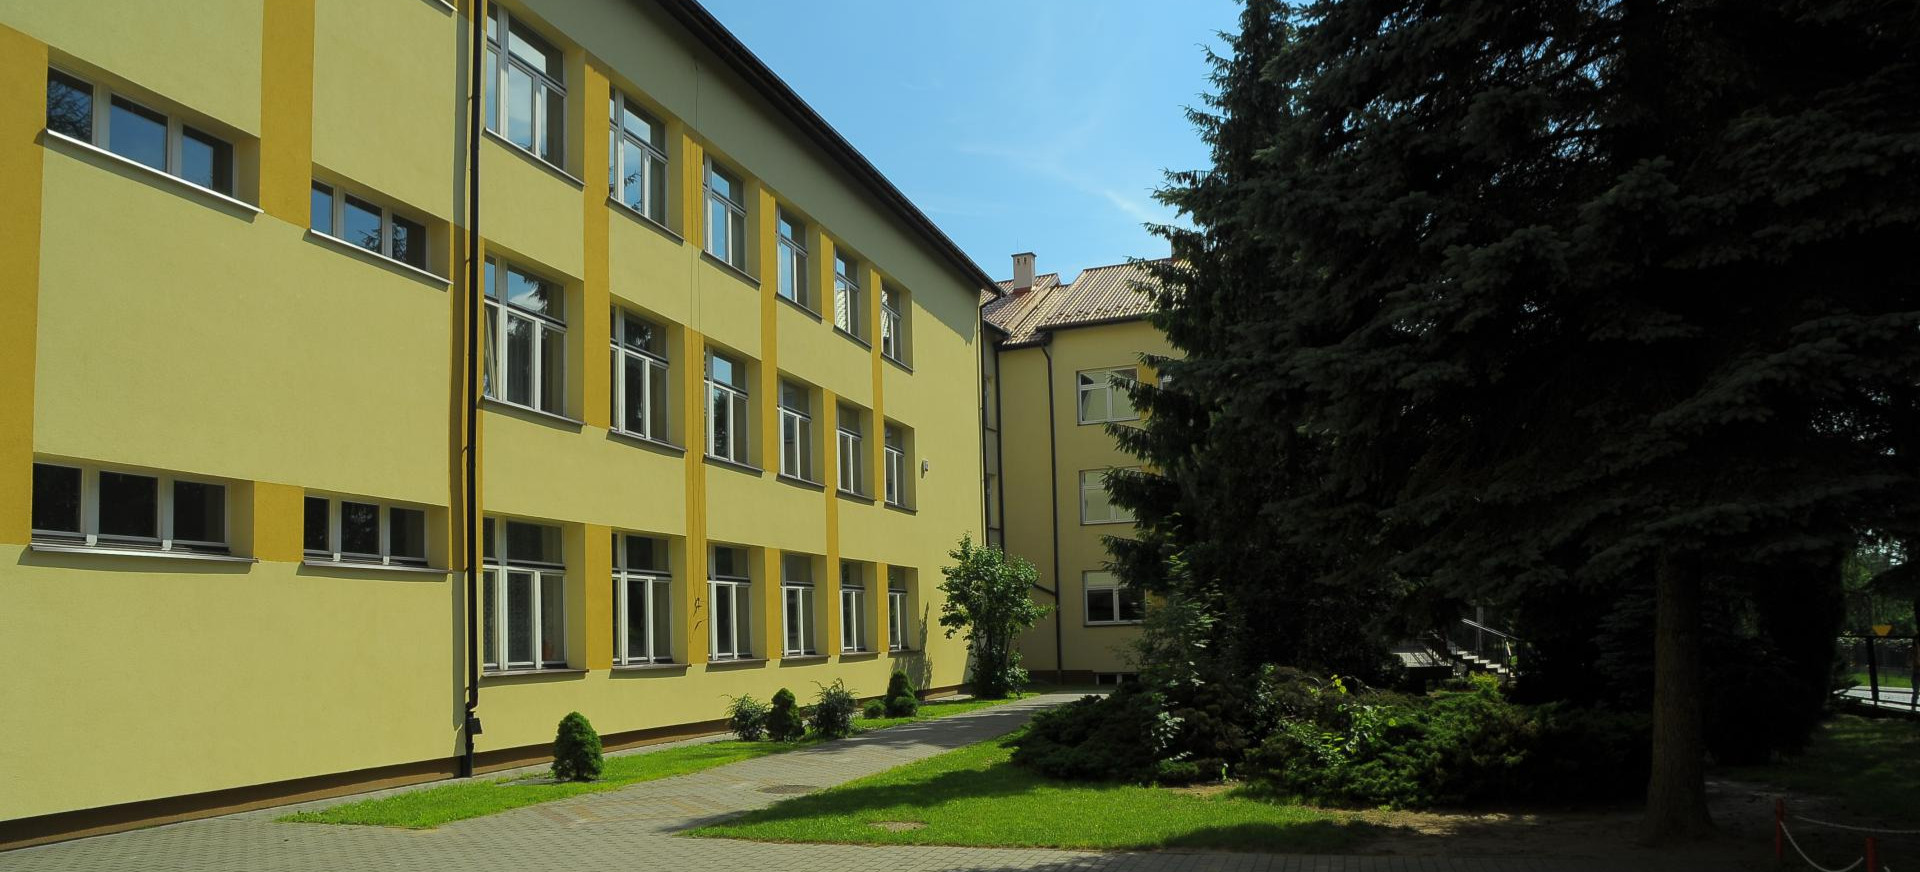 RZESZÓW. Inwestycja przy szkole na osiedlu Słocina w Rzeszowie